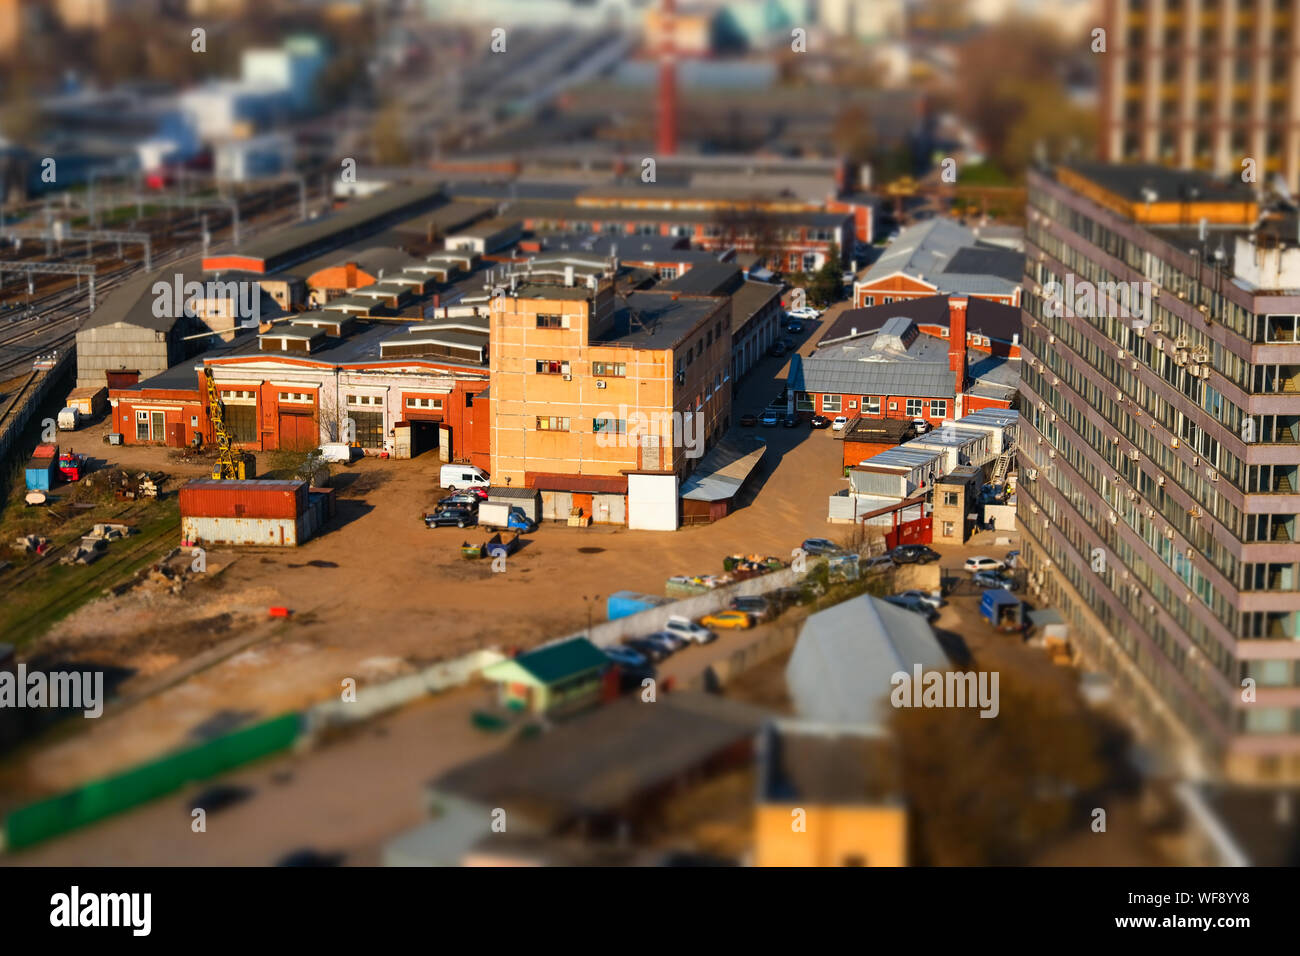 Vista panoramica del vecchio quartiere industriale della città con tilt-shift effetto a Mosca, Russia Foto Stock